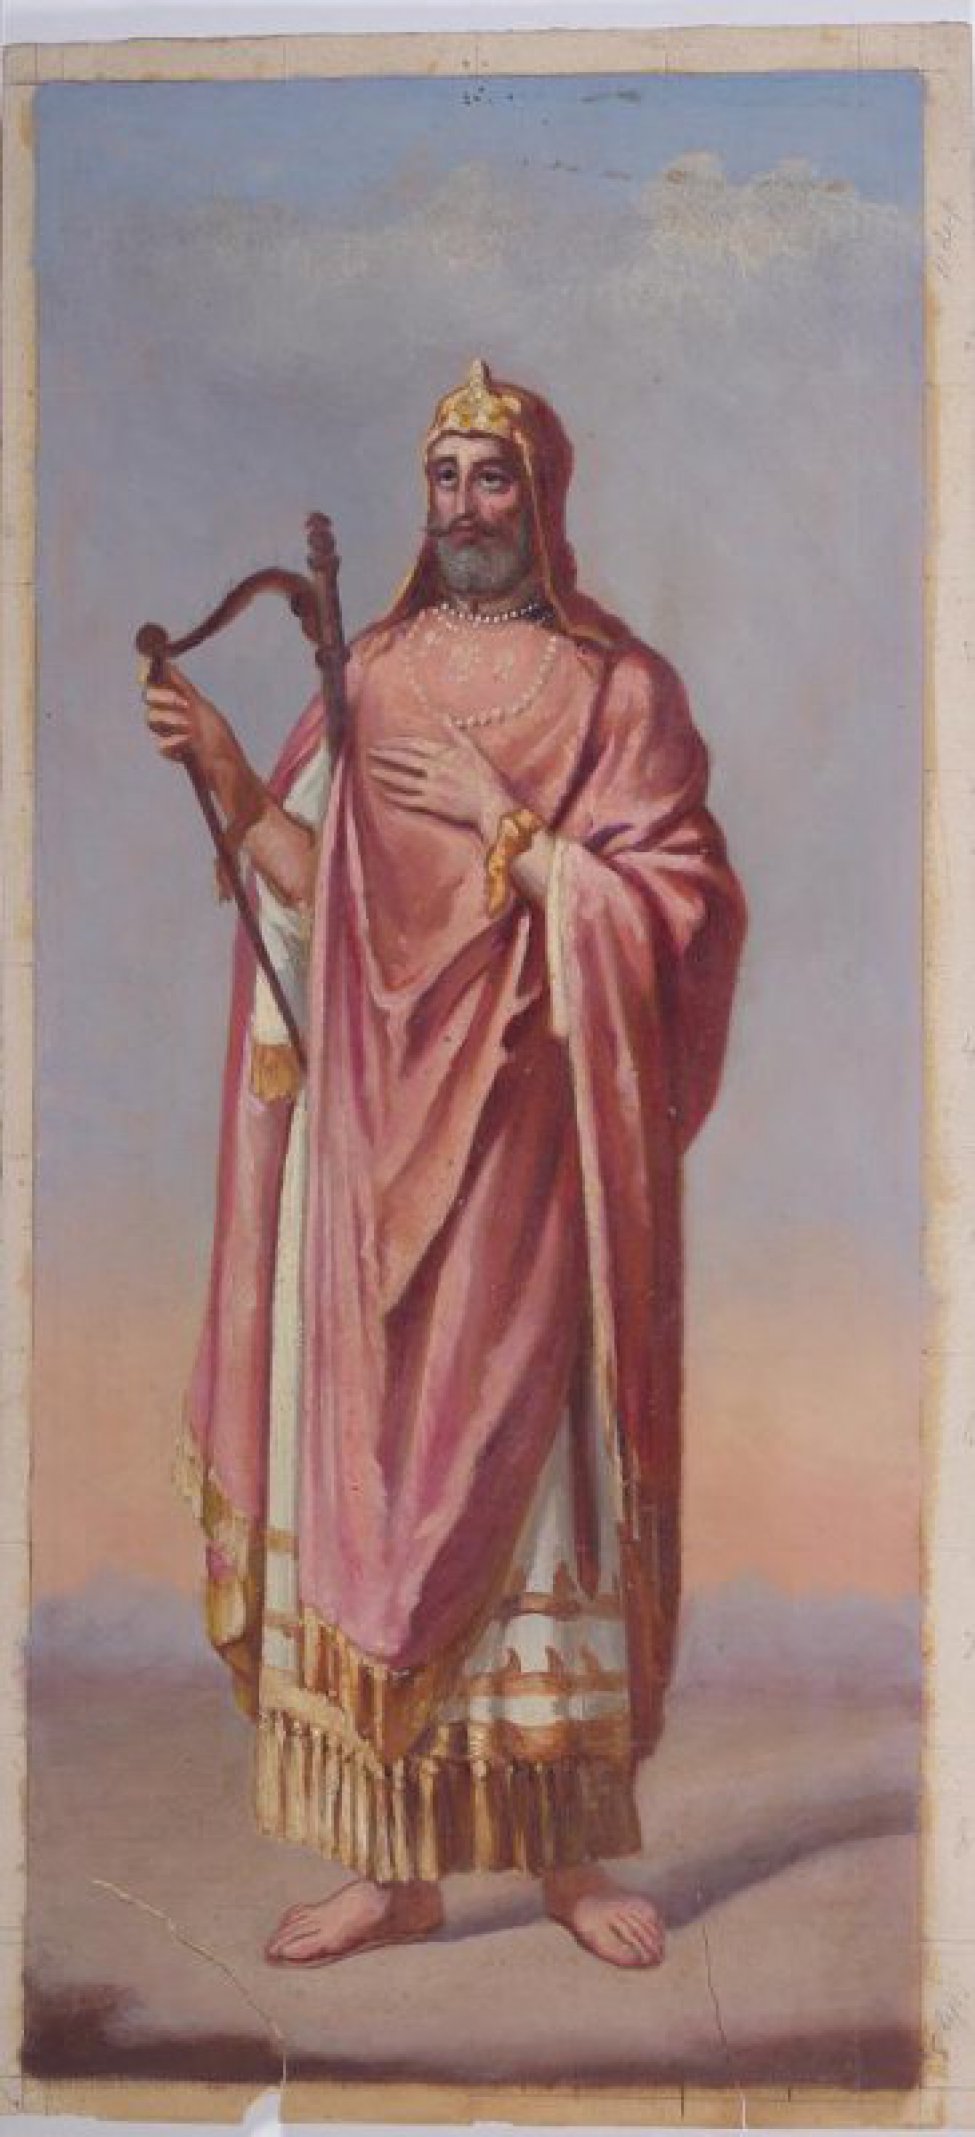 Изображен мужчина в рост с арфой в правой руке. На голове шлем (?). Одет в розовую и белую одежды. Борода седая. Ноги босые.